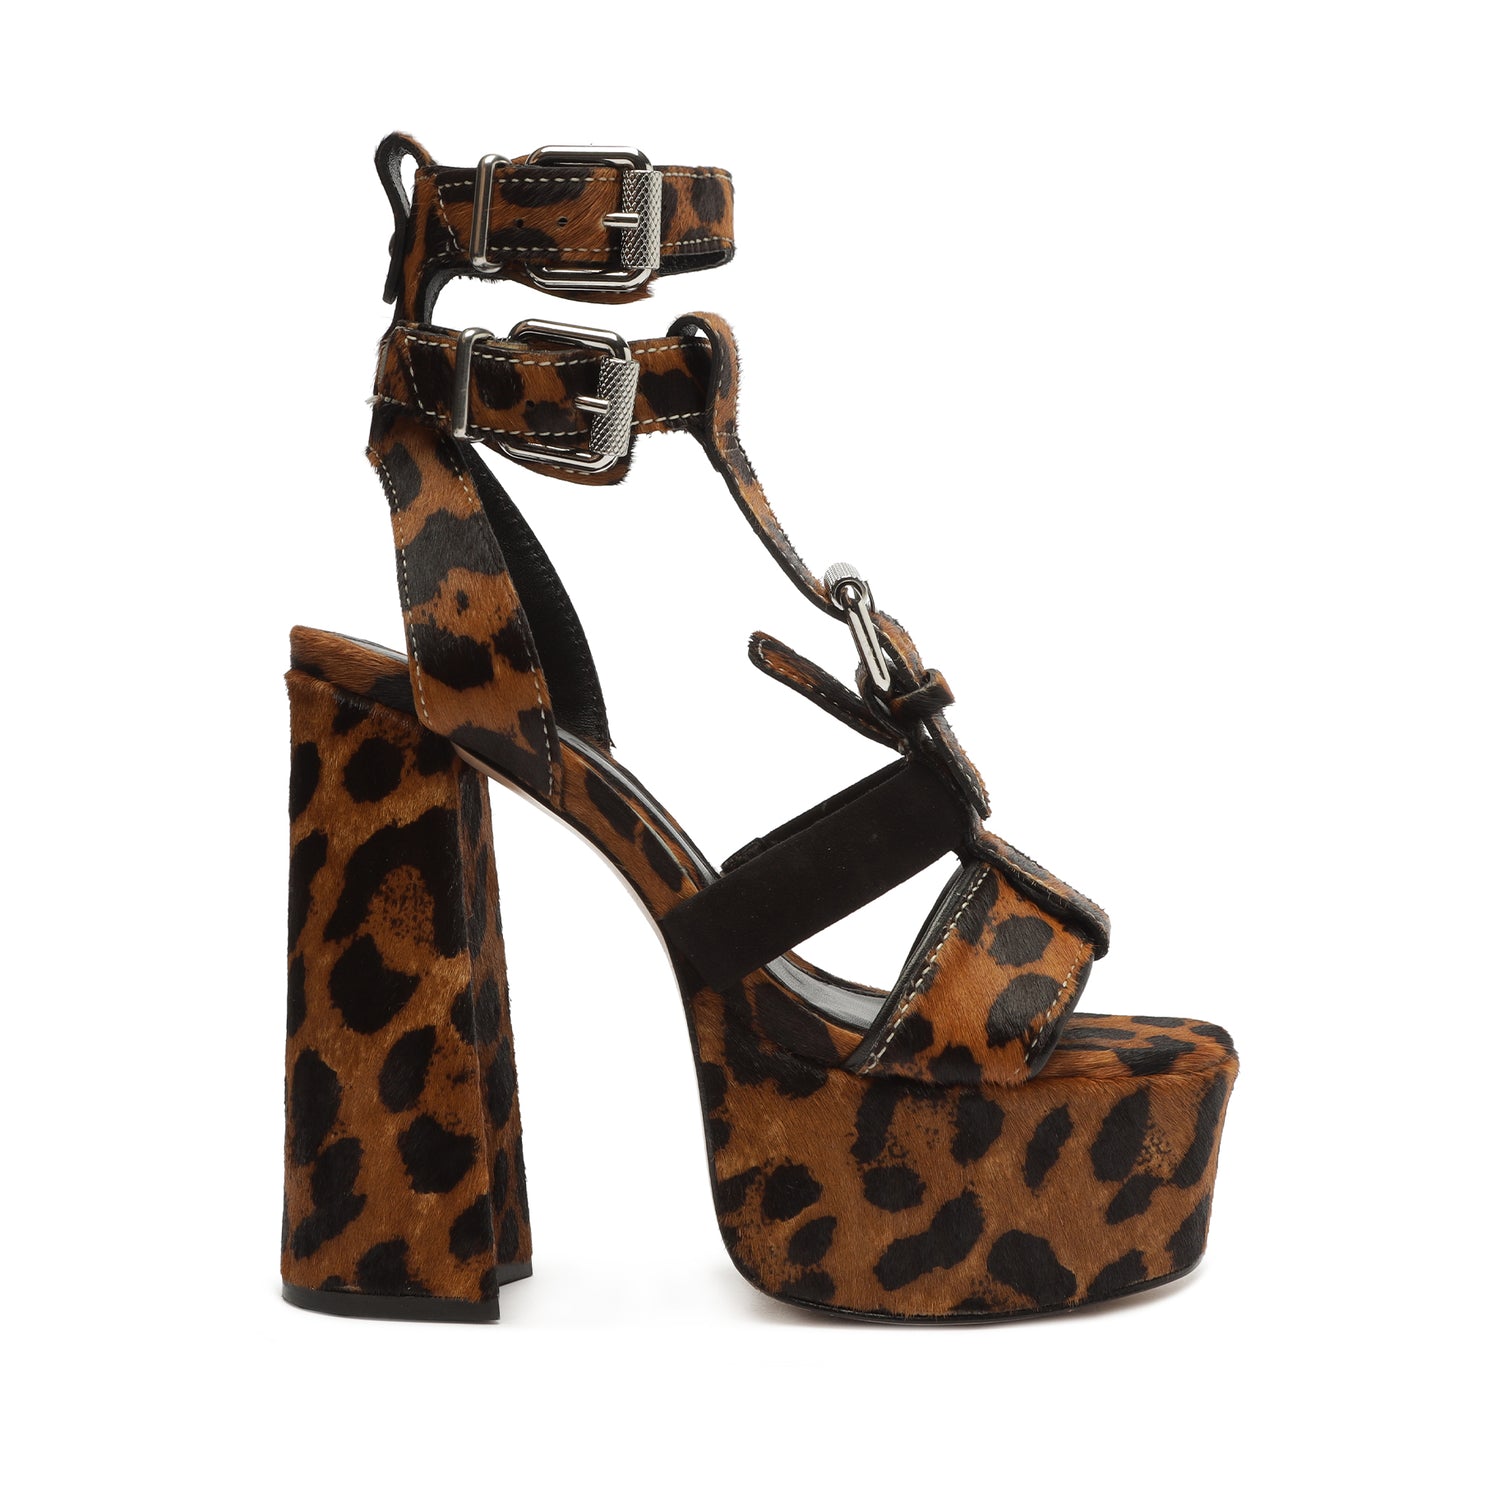 Sierra - Leopard Print , 3.5 or 4 inch Stiletto Heel, Open Toe